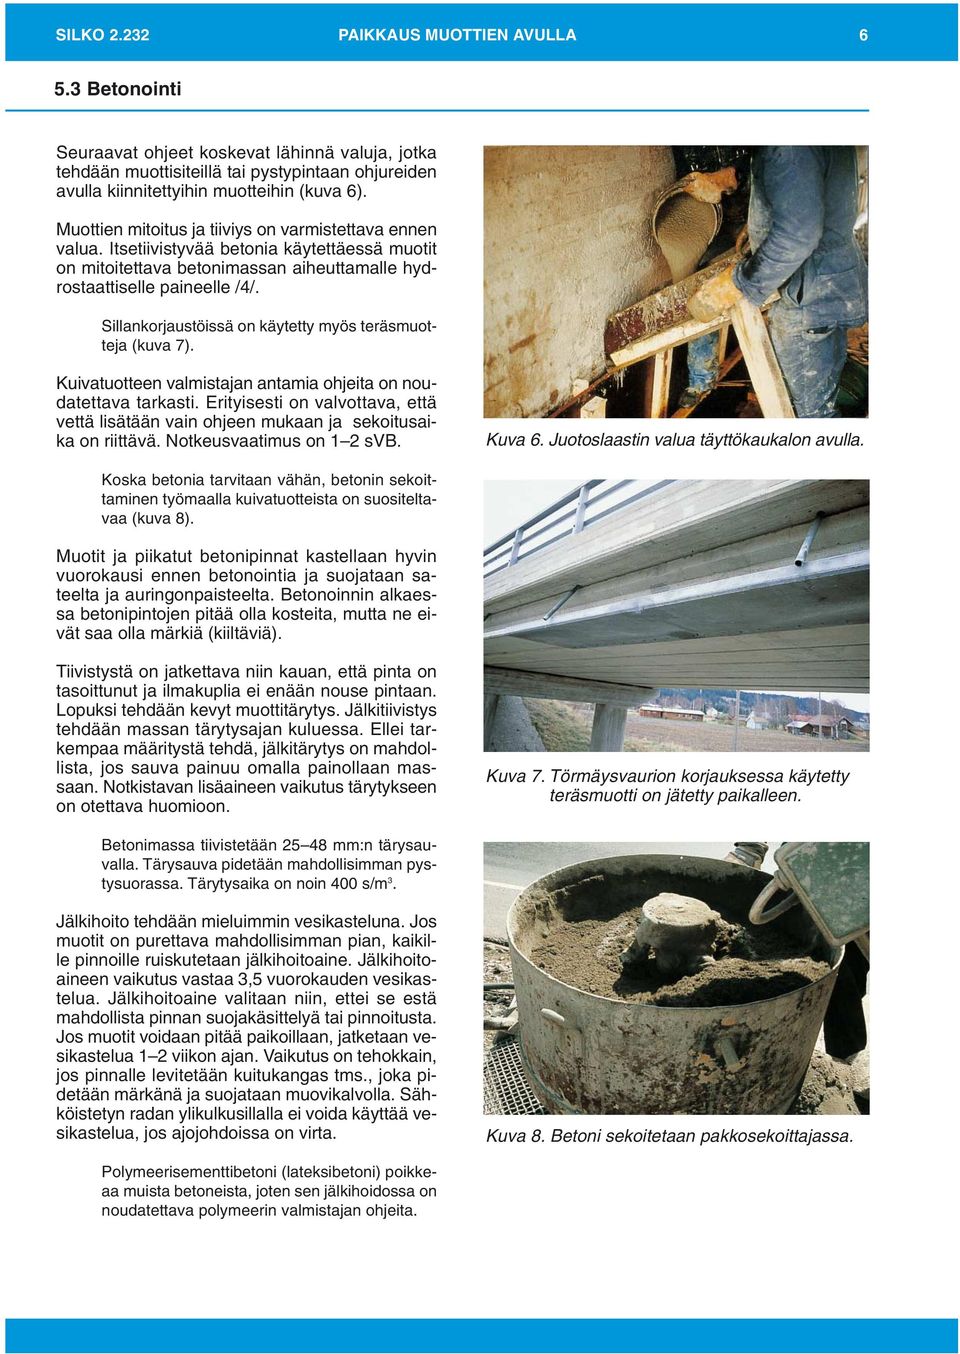 Sillankorjaustöissä on käytetty myös teräsmuotteja (kuva 7). Kuivatuotteen valmistajan antamia ohjeita on noudatettava tarkasti.